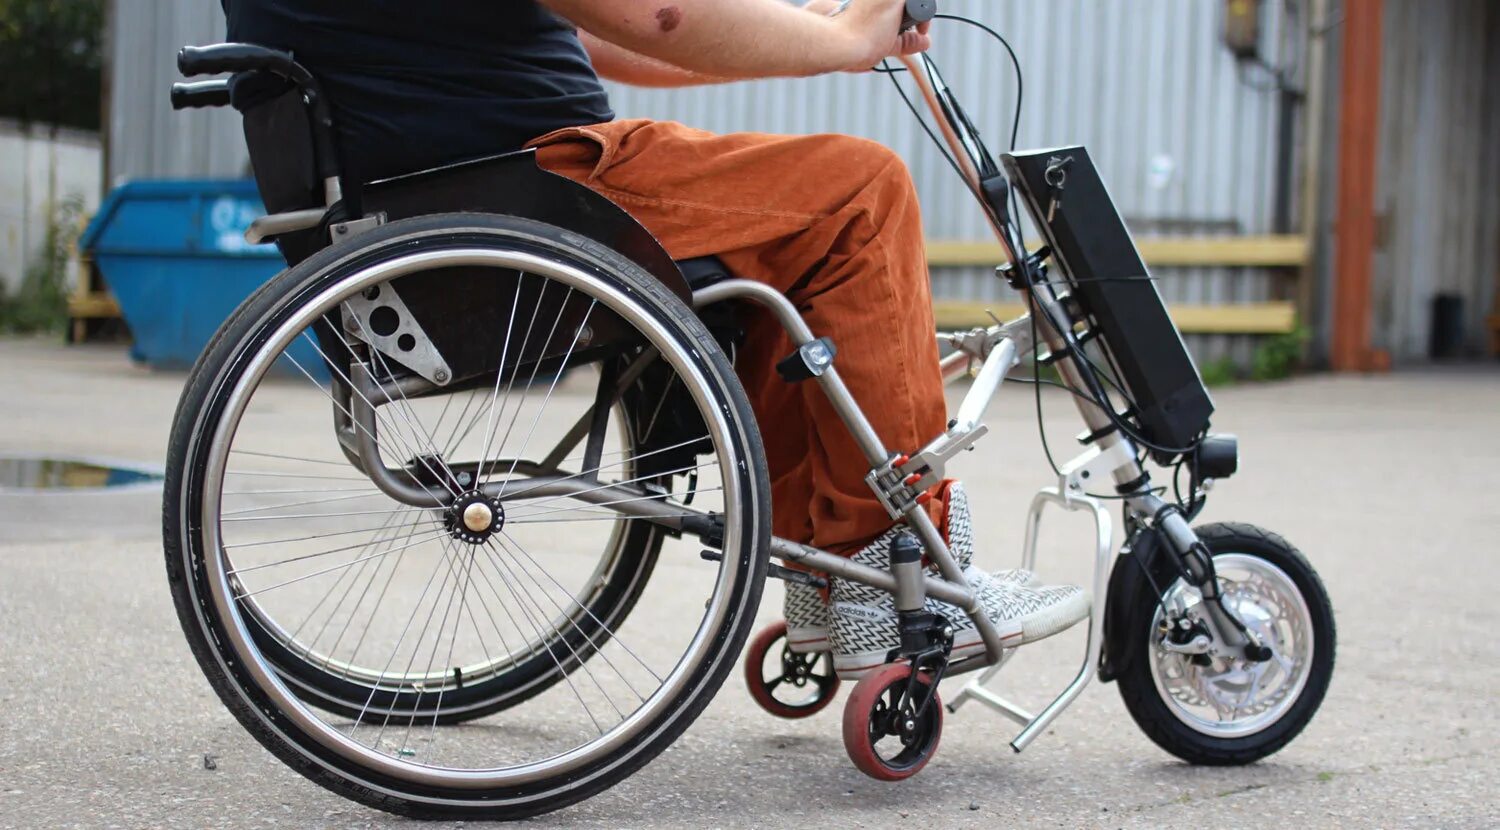 Электро приставки. Приставка для инвалидной коляски una Wheel. Электроприставка для инвалидной коляски. Una Wheel электроприставка для инвалидных колясок. Электропр ставка кинвалидской коляске.